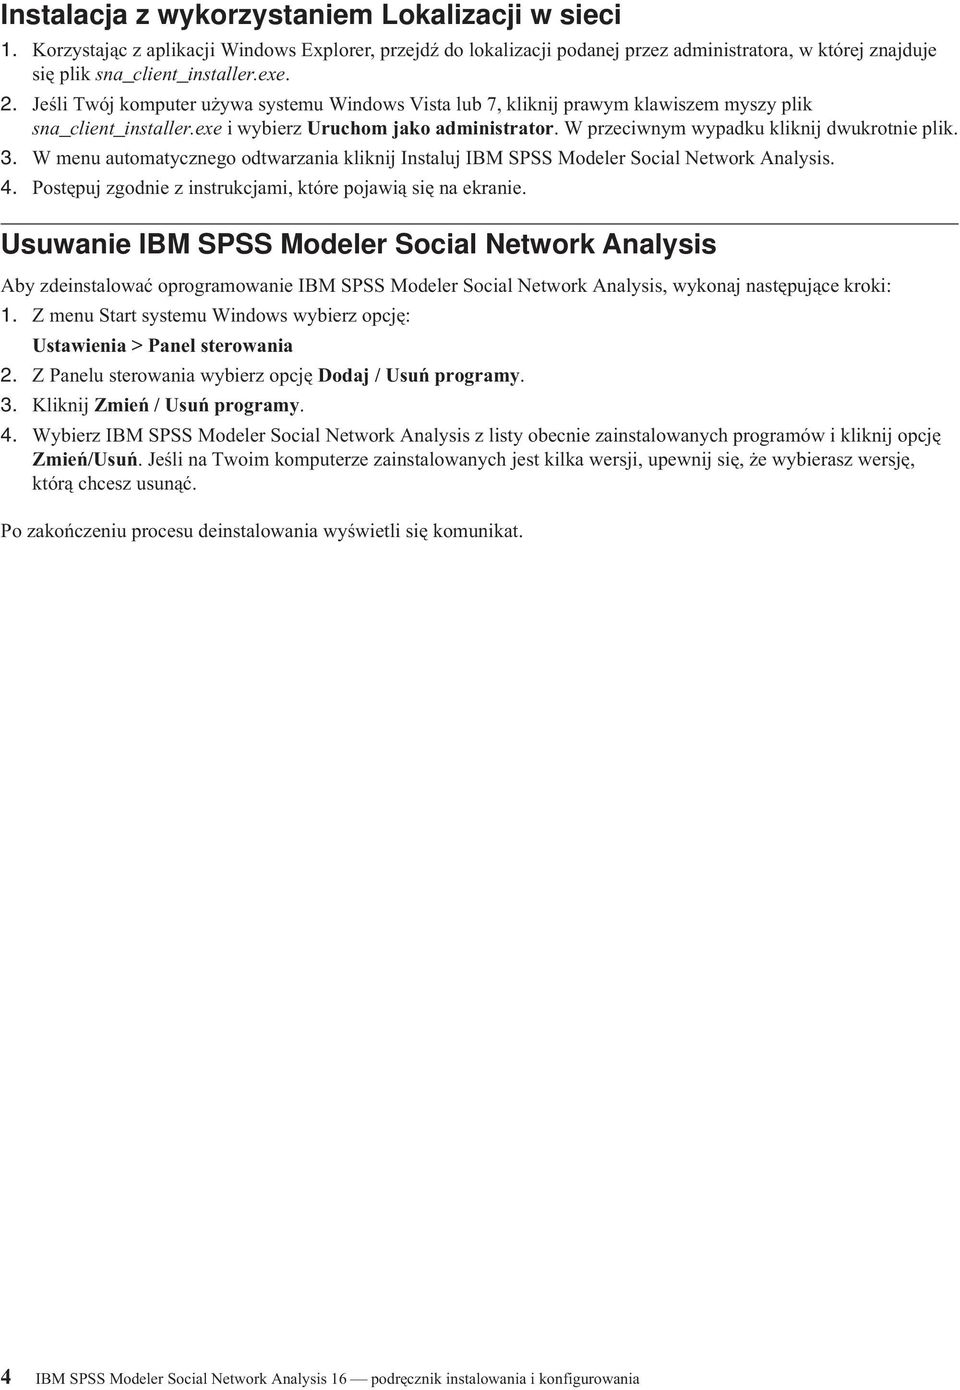 W przeciwnym wypadku kliknij dwukrotnie plik. 3. W menu automatycznego odtwarzania kliknij Instaluj IBM SPSS Modeler Social Network Analysis. 4.